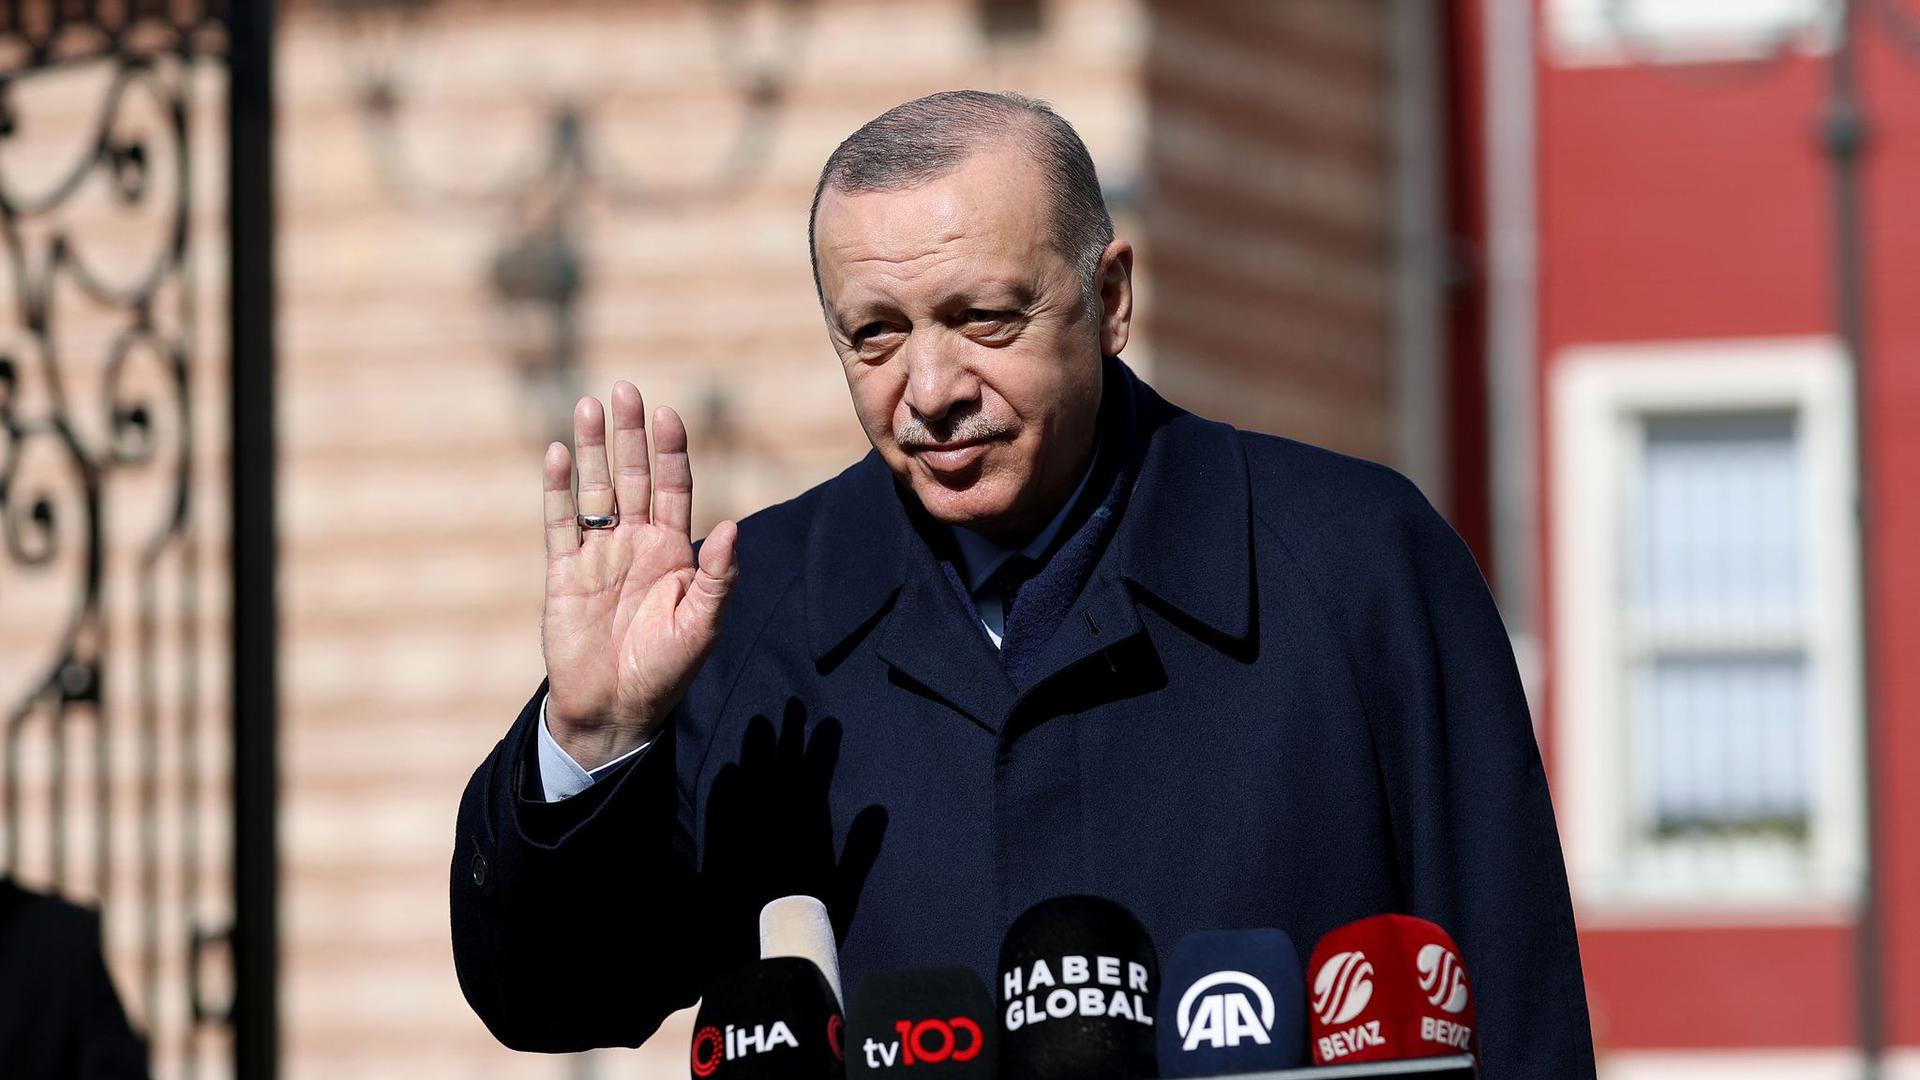 Der türkische Präsident Recep Tayyip Erdogan. Unabhängig vom Erdgasstreit will die EU die Zusammenarbeit mit der Türkei in Bereichen wie Grenzschutz und Bekämpfung illegaler Migration ausbauen.